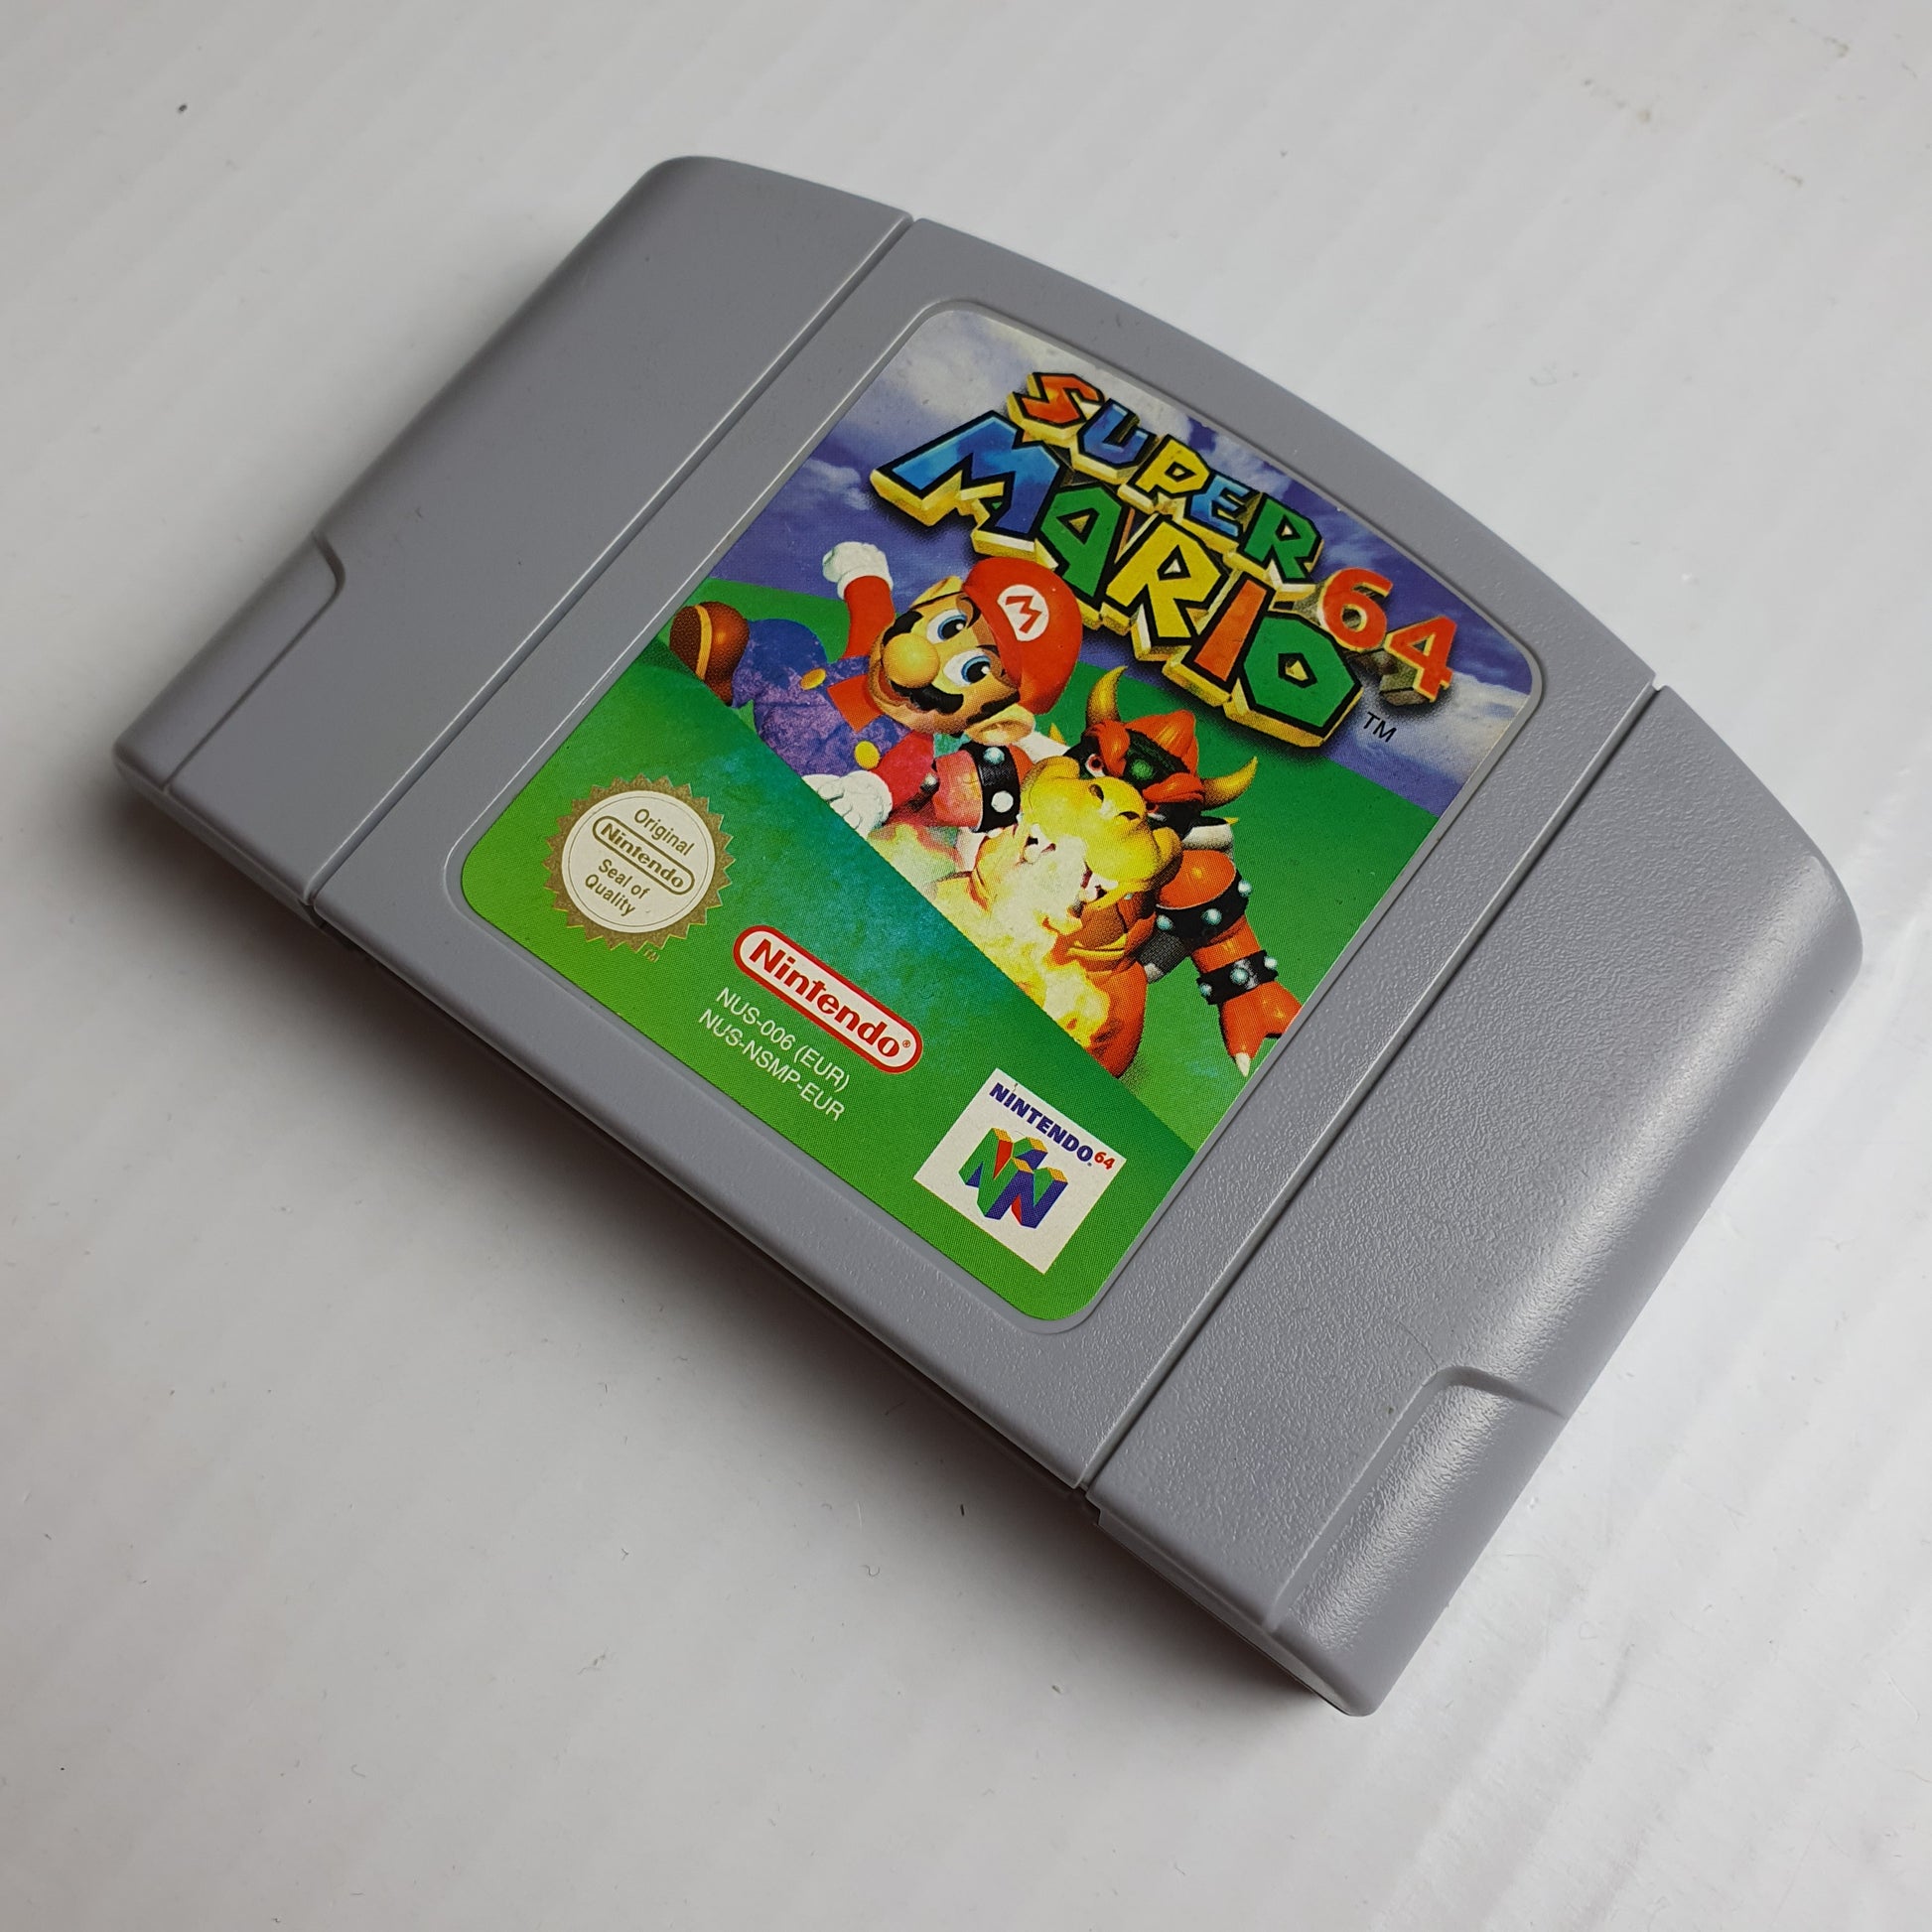 Super Mario 64 - Nintendo 64, Nintendo 64